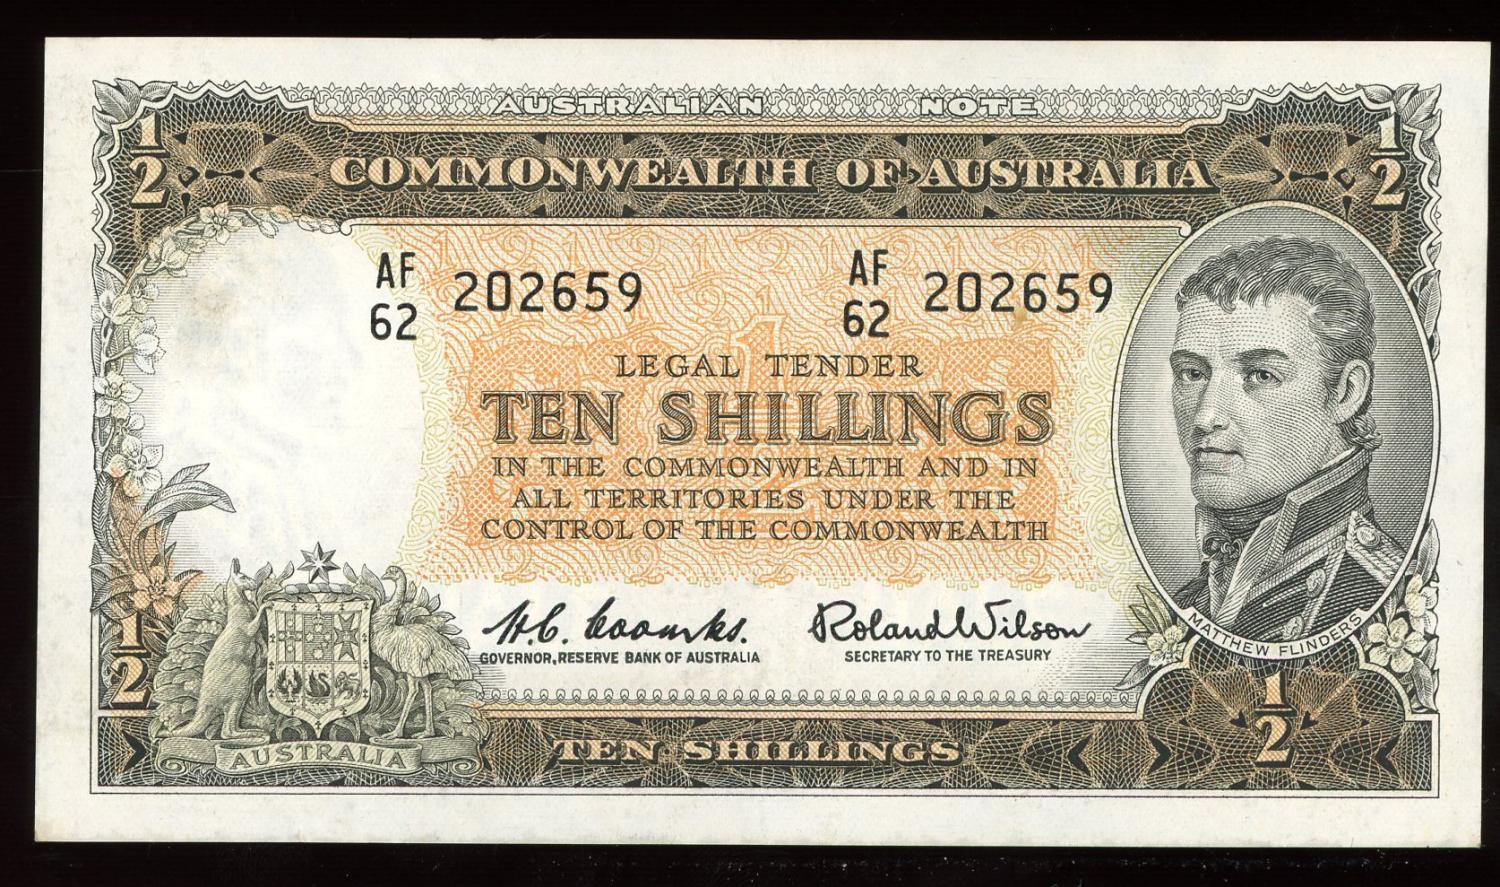 Thumbnail for 1961 Ten Shillings AF62 202659 EF